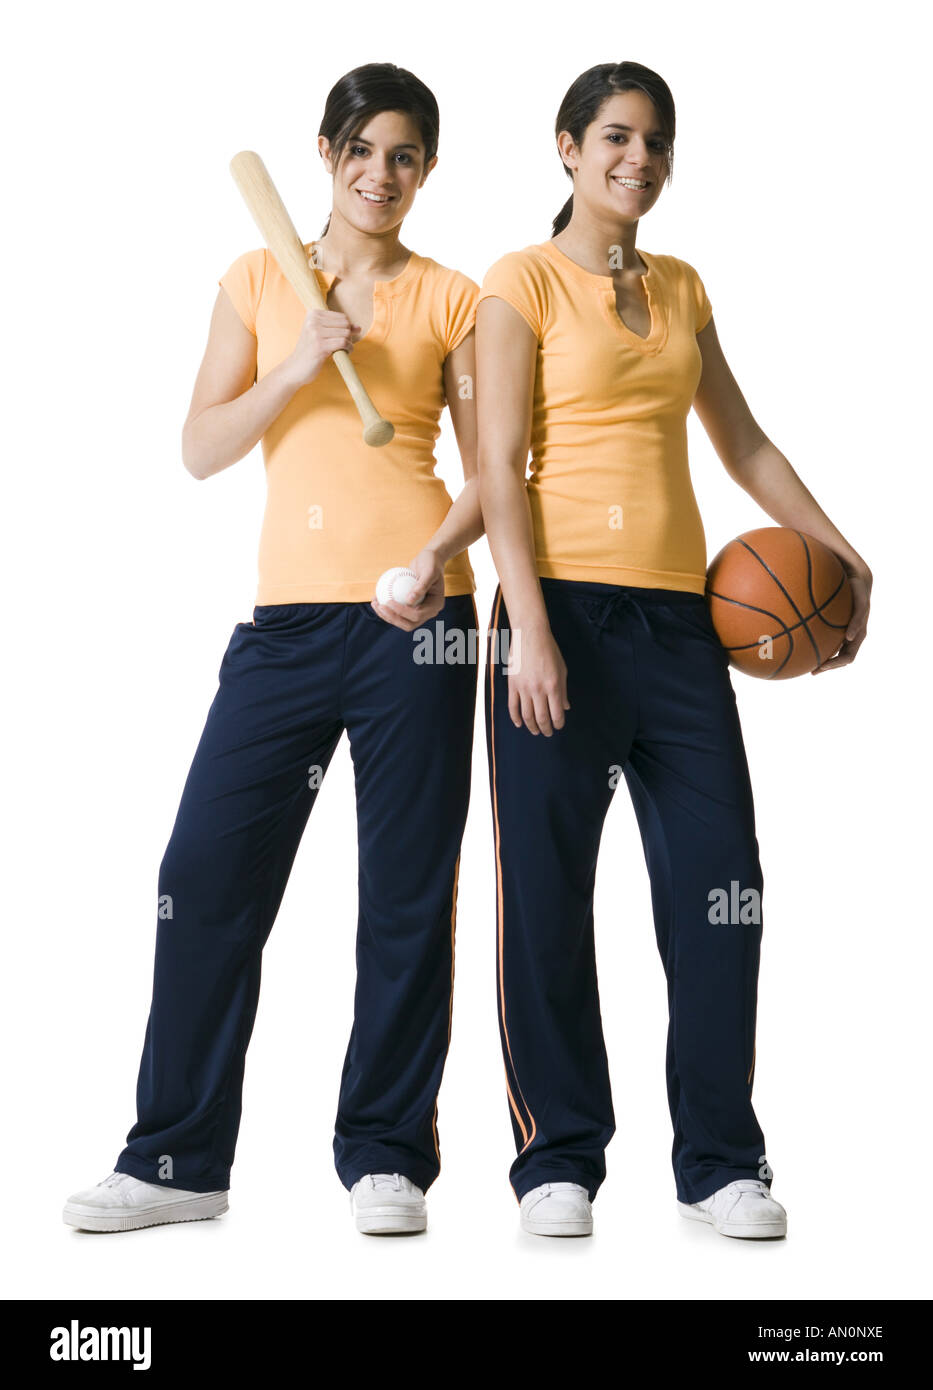 Portrait de deux adolescentes tenant une batte de baseball et un terrain de basket-ball Banque D'Images